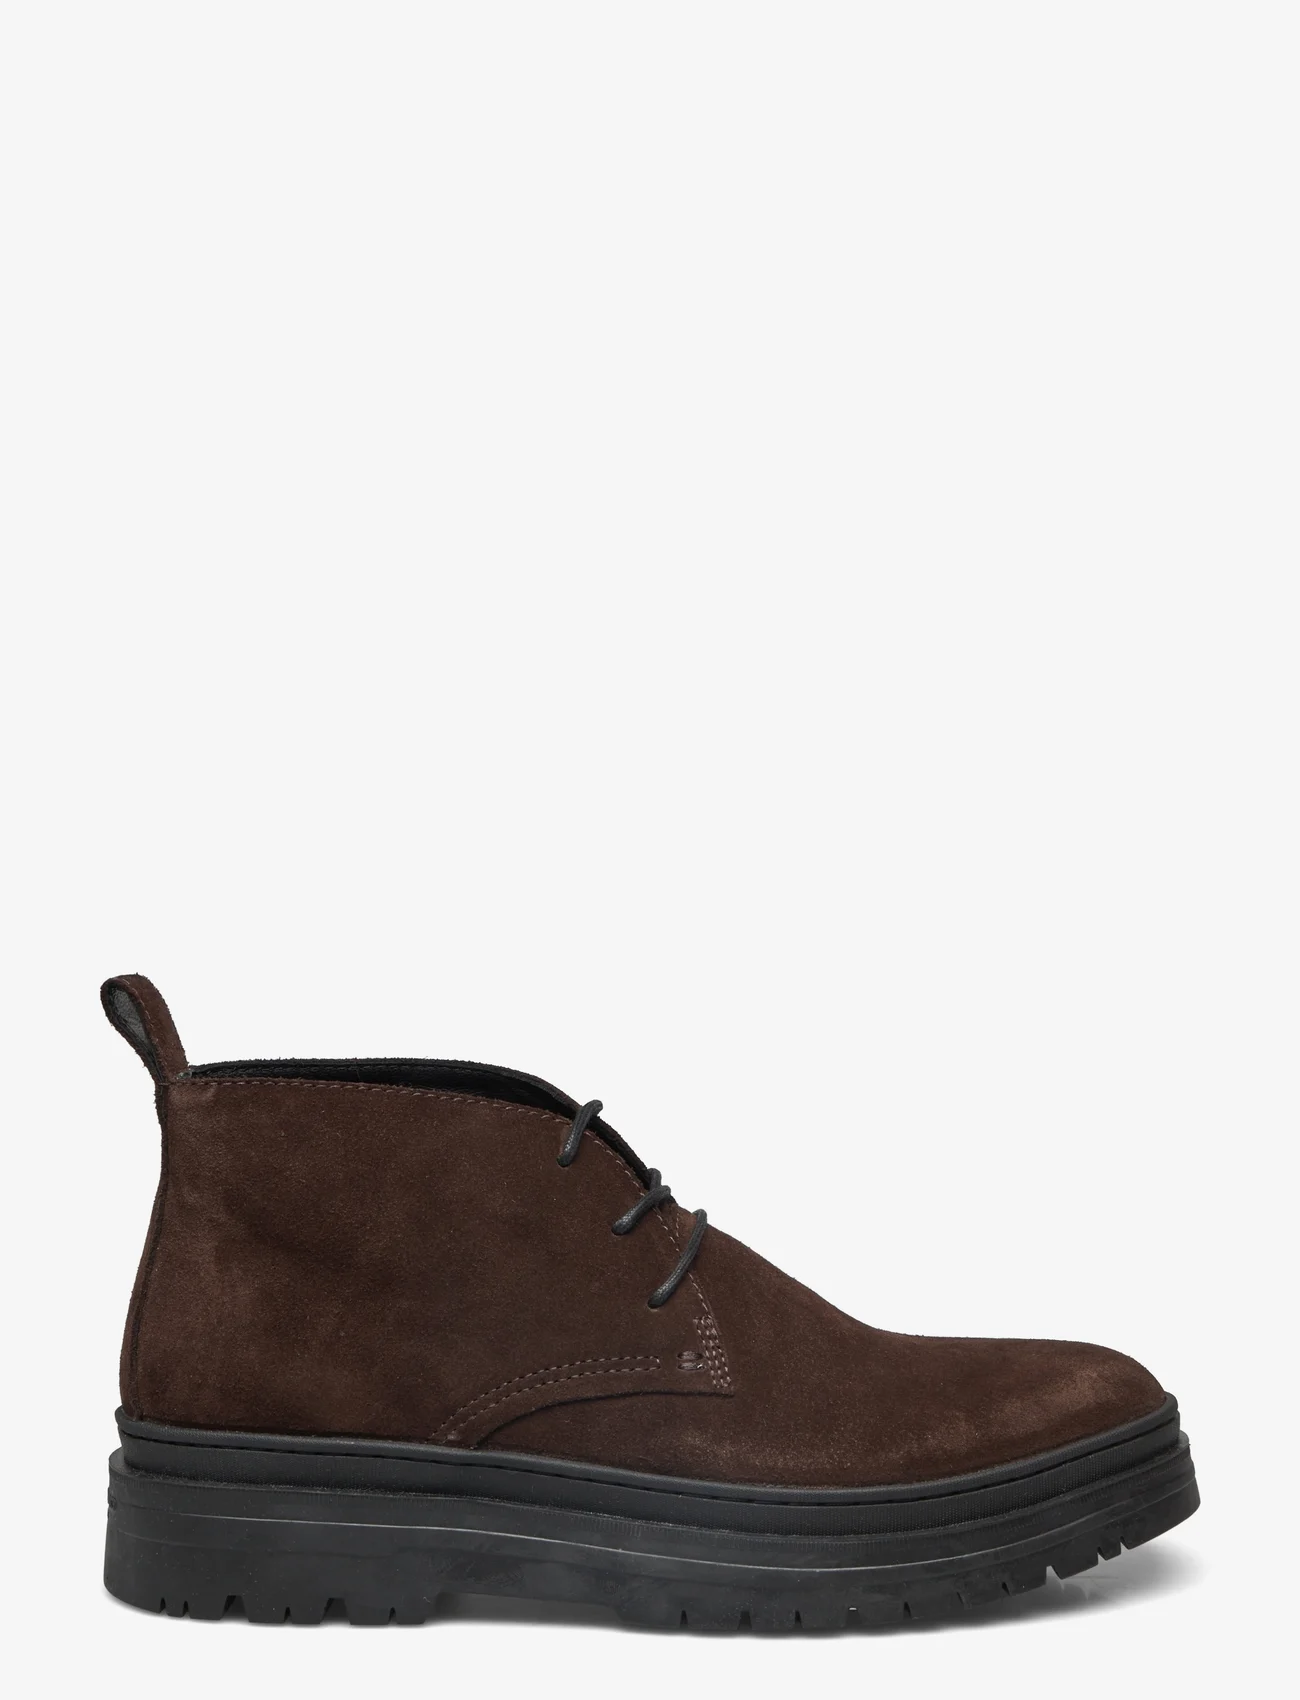 VAGABOND - JAMES - desert boots - dark brown - 1